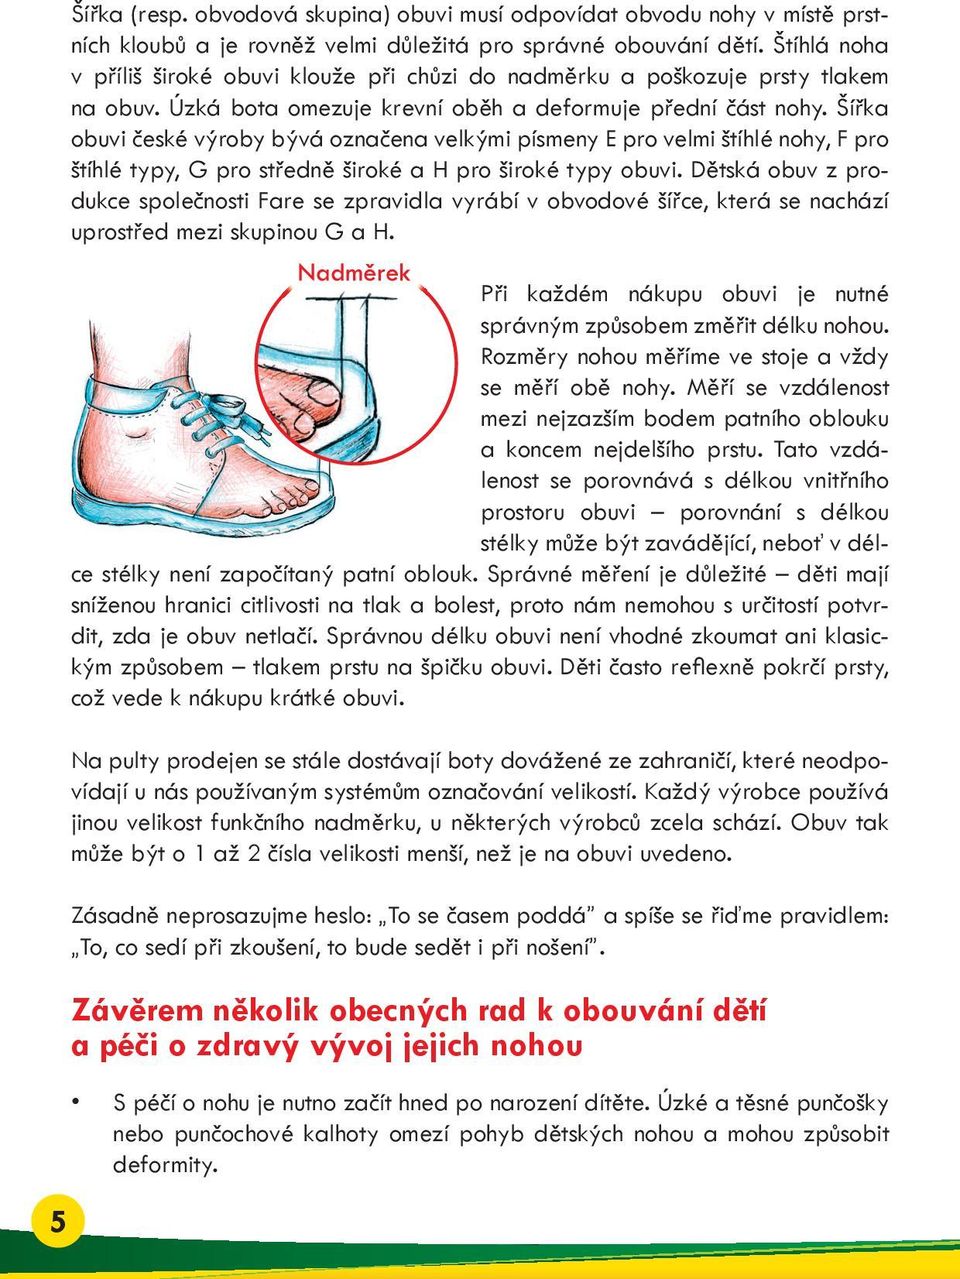 Šířka obuvi české výroby bývá označena velkými písmeny E pro velmi štíhlé nohy, F pro štíhlé typy, G pro středně široké a H pro široké typy obuvi.